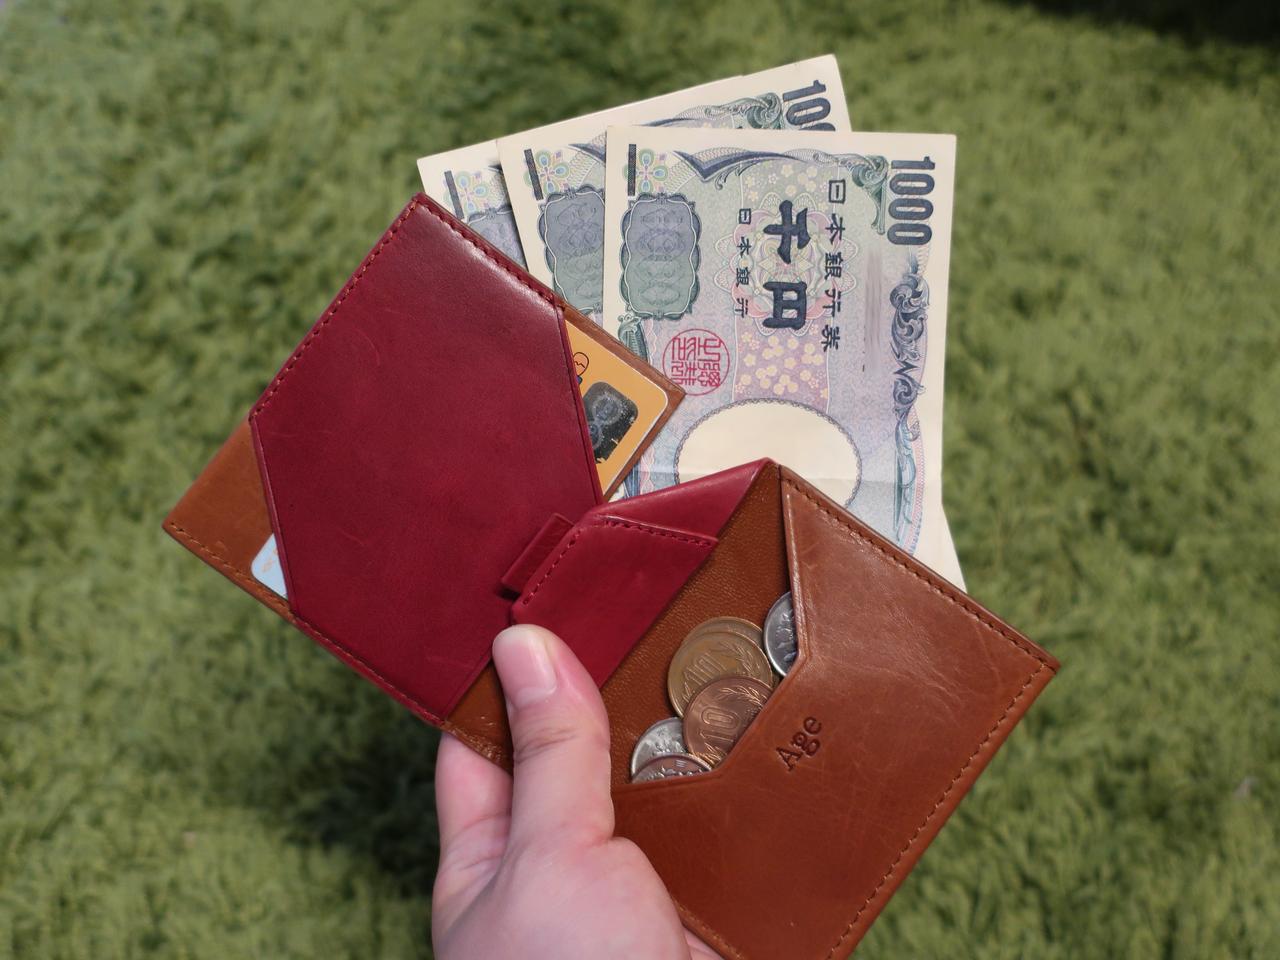 薄さわずか2cm！ 1000万円超えの注目薄型レザー財布｢One｣をレポート